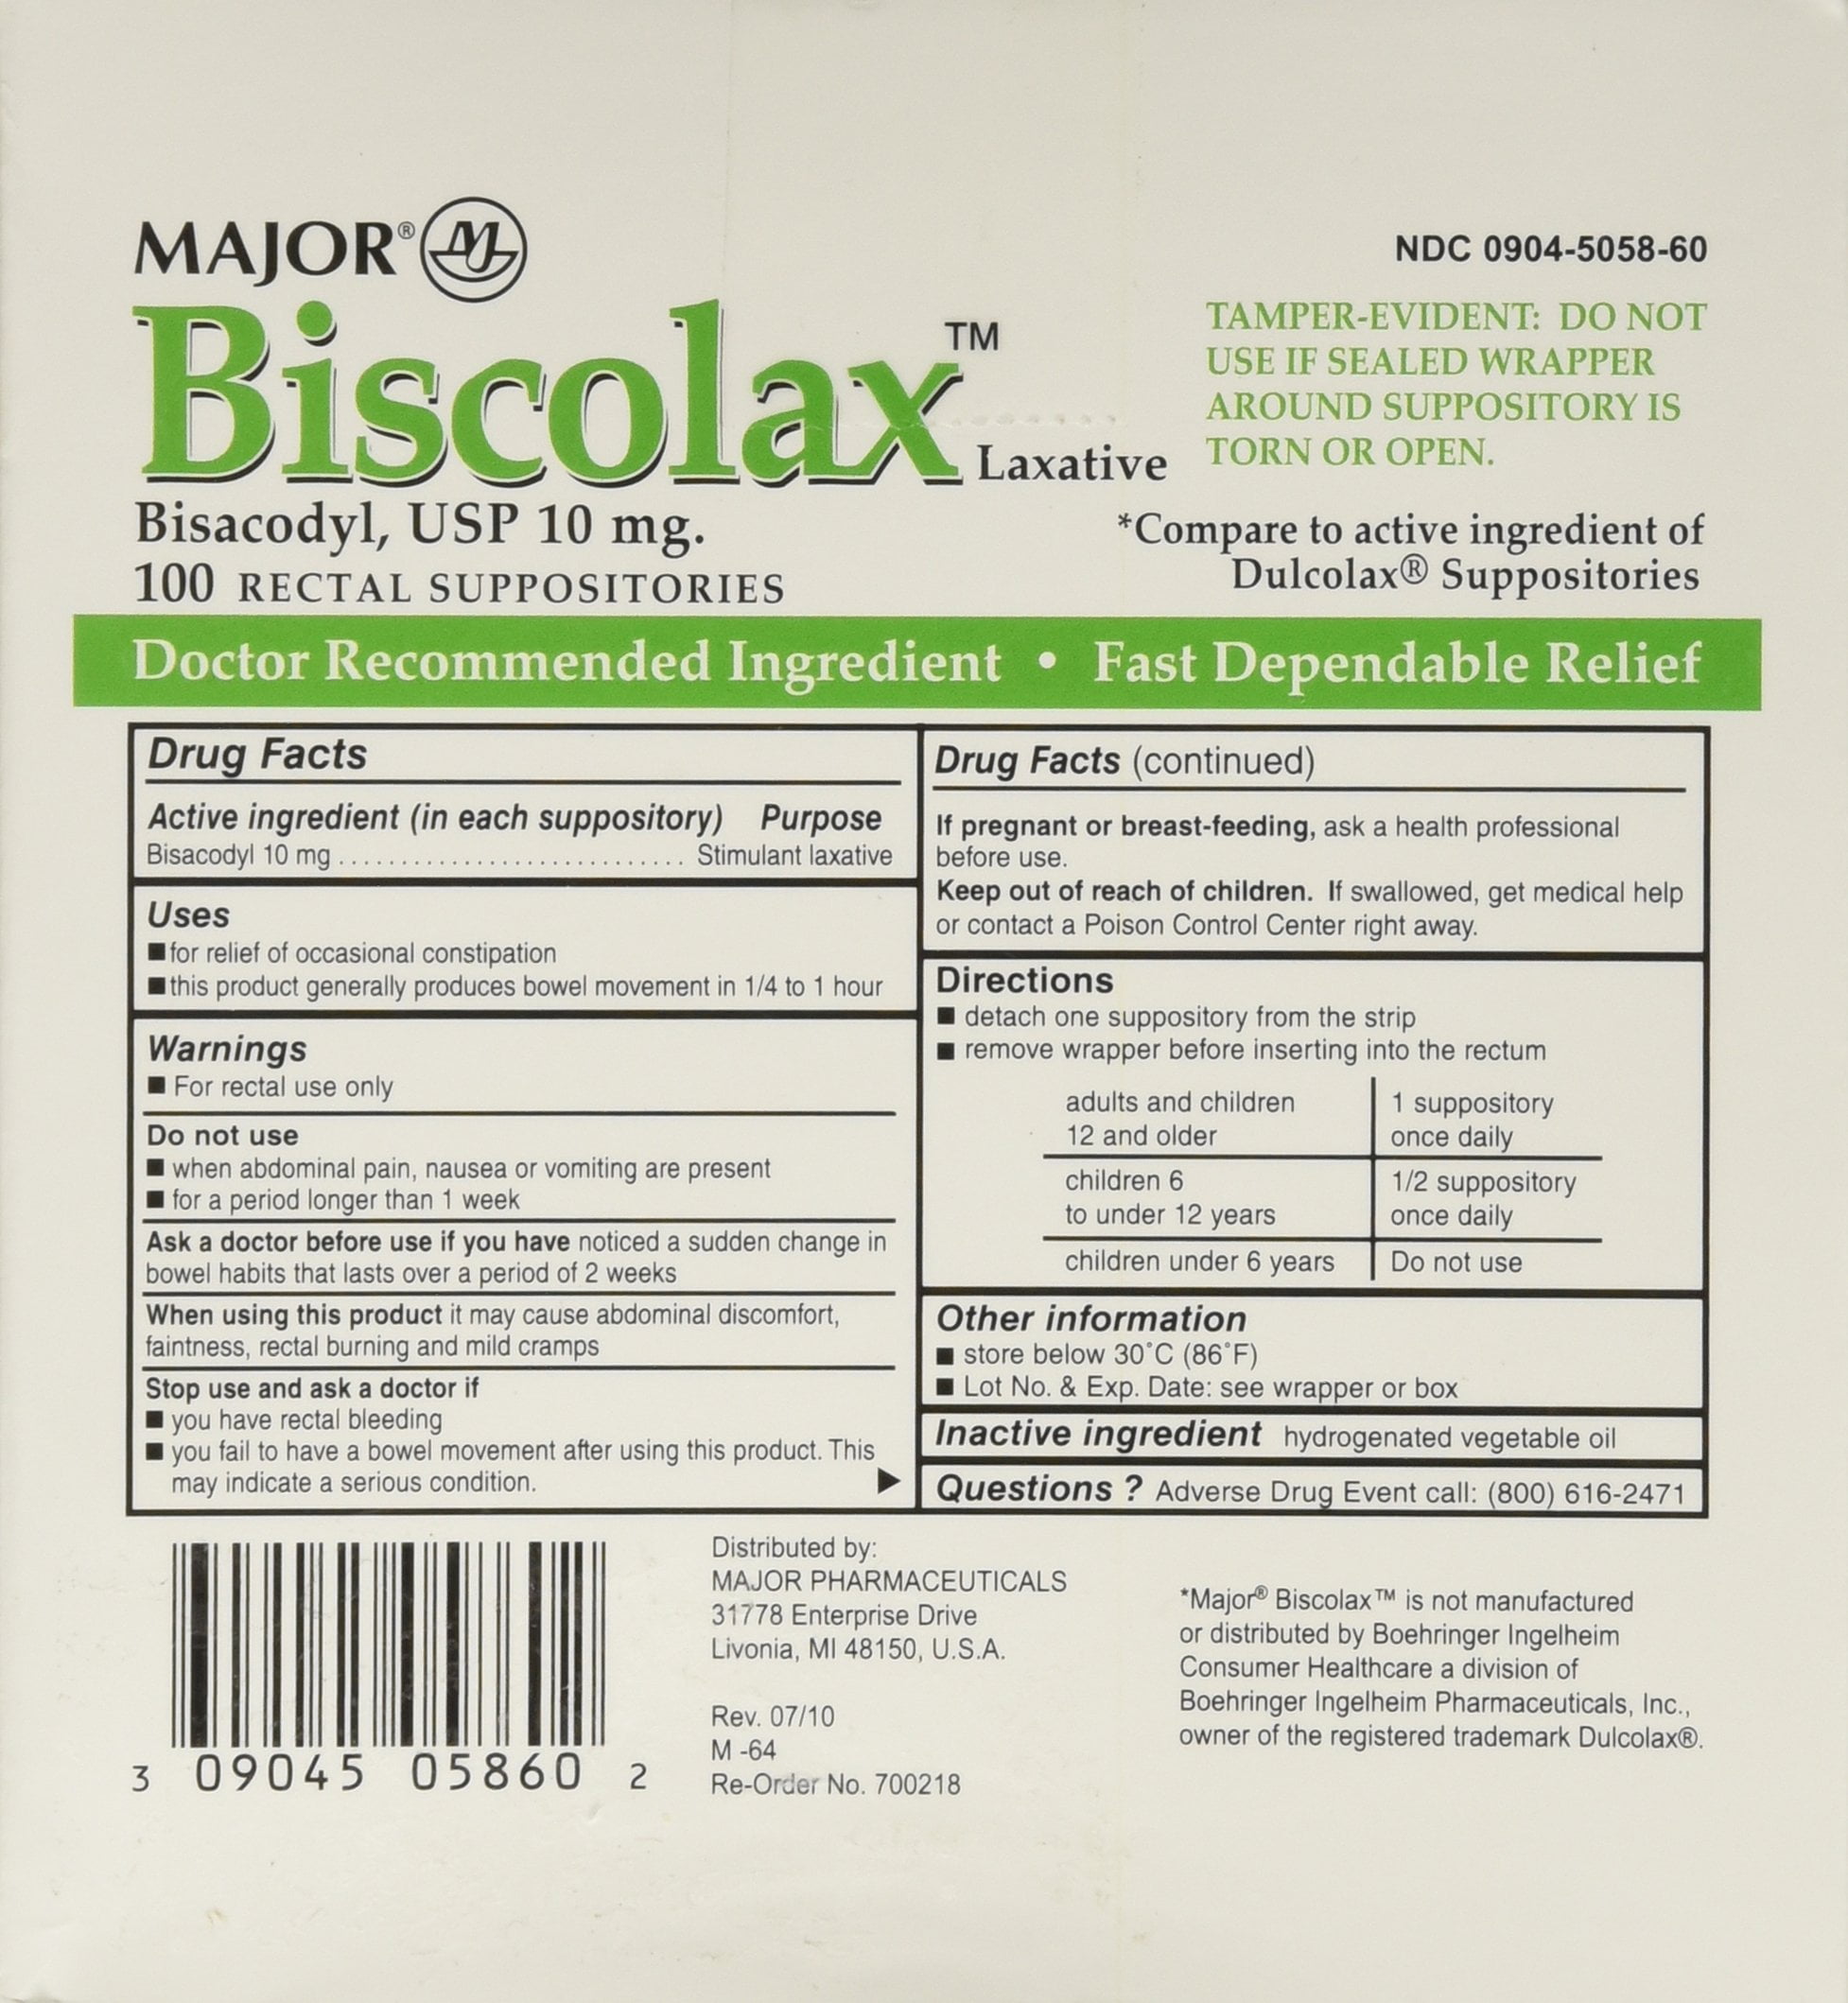 Major ® Bisacodyl Medicated Suppositories 100 ct